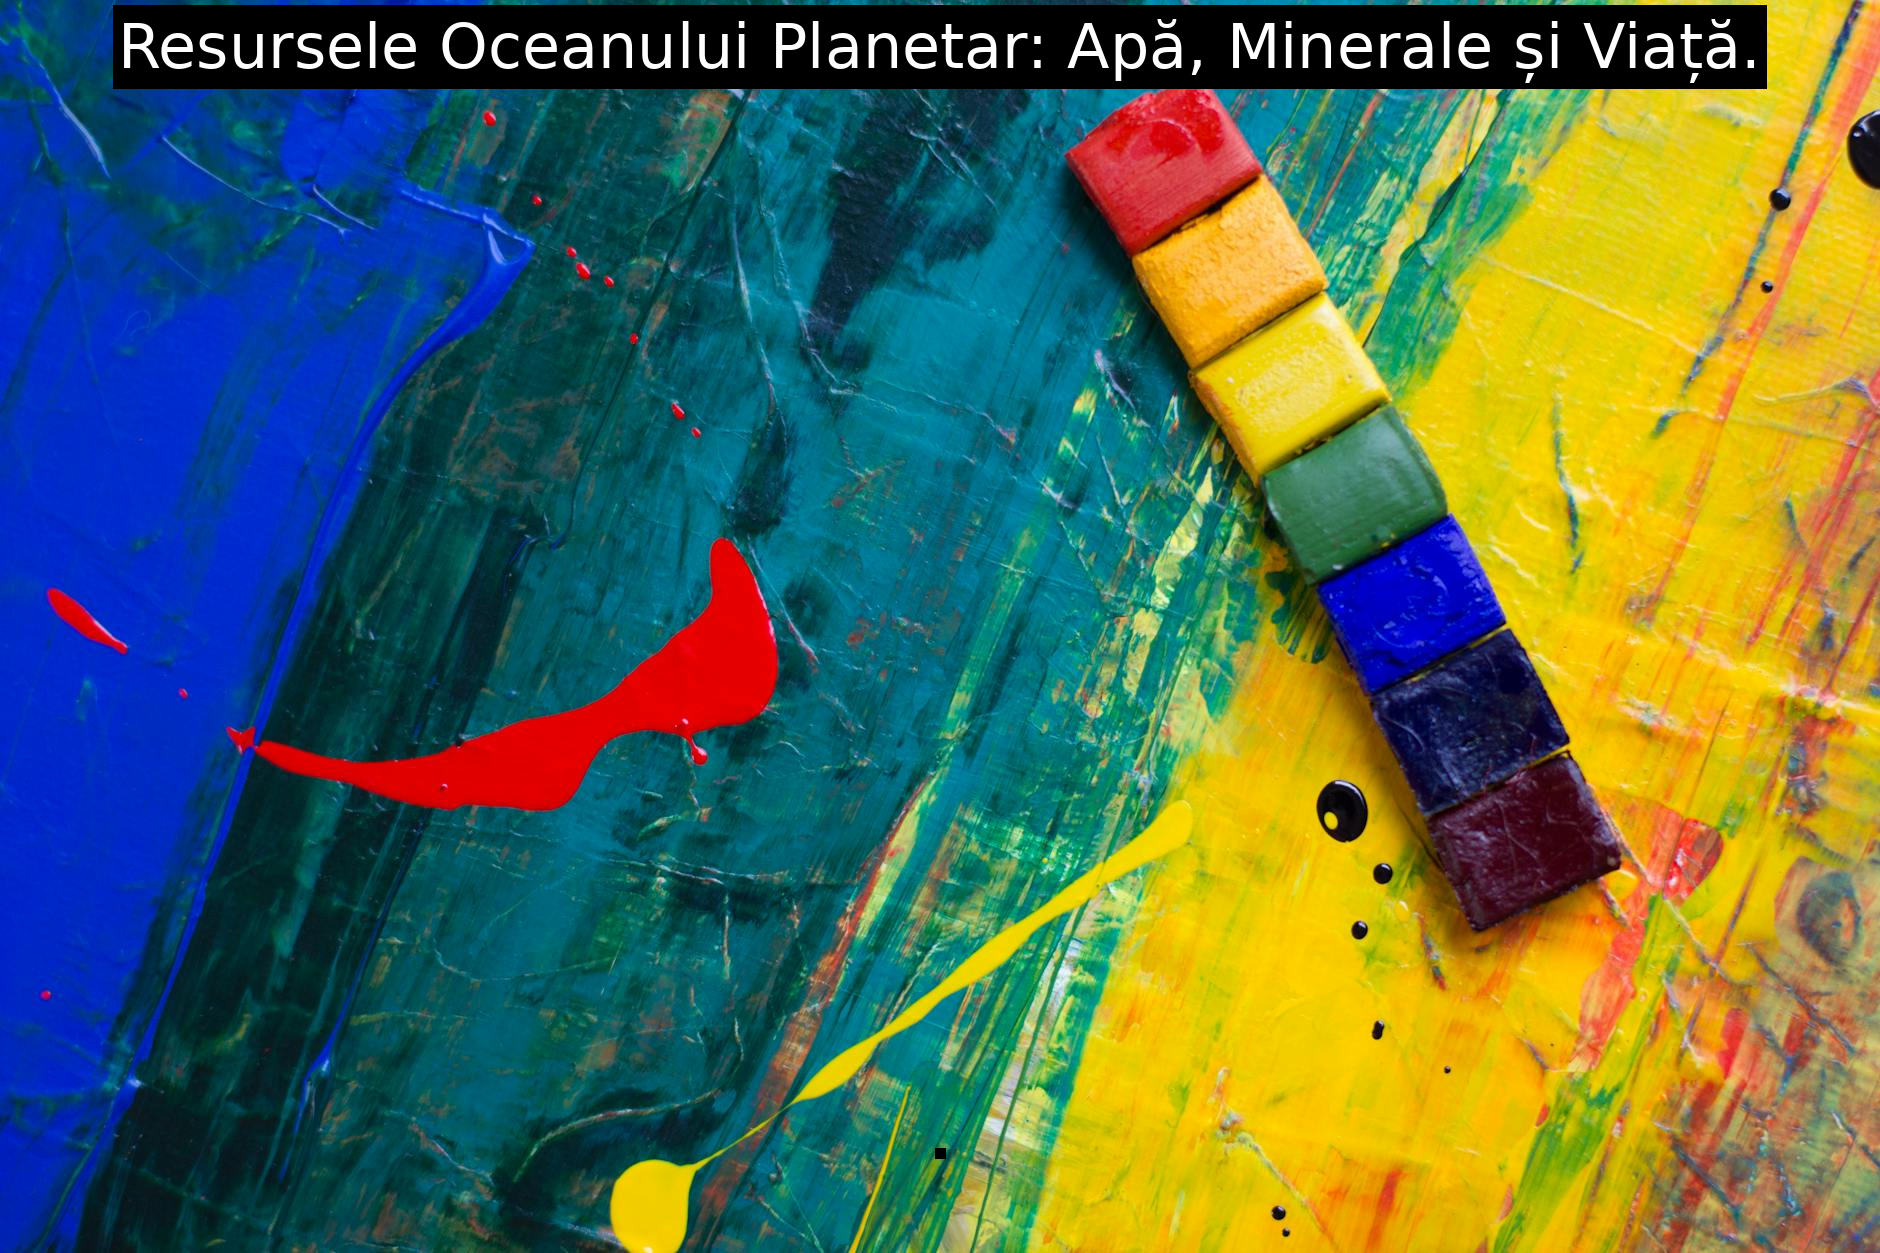 Resursele Oceanului Planetar: Apă, Minerale și Viață.